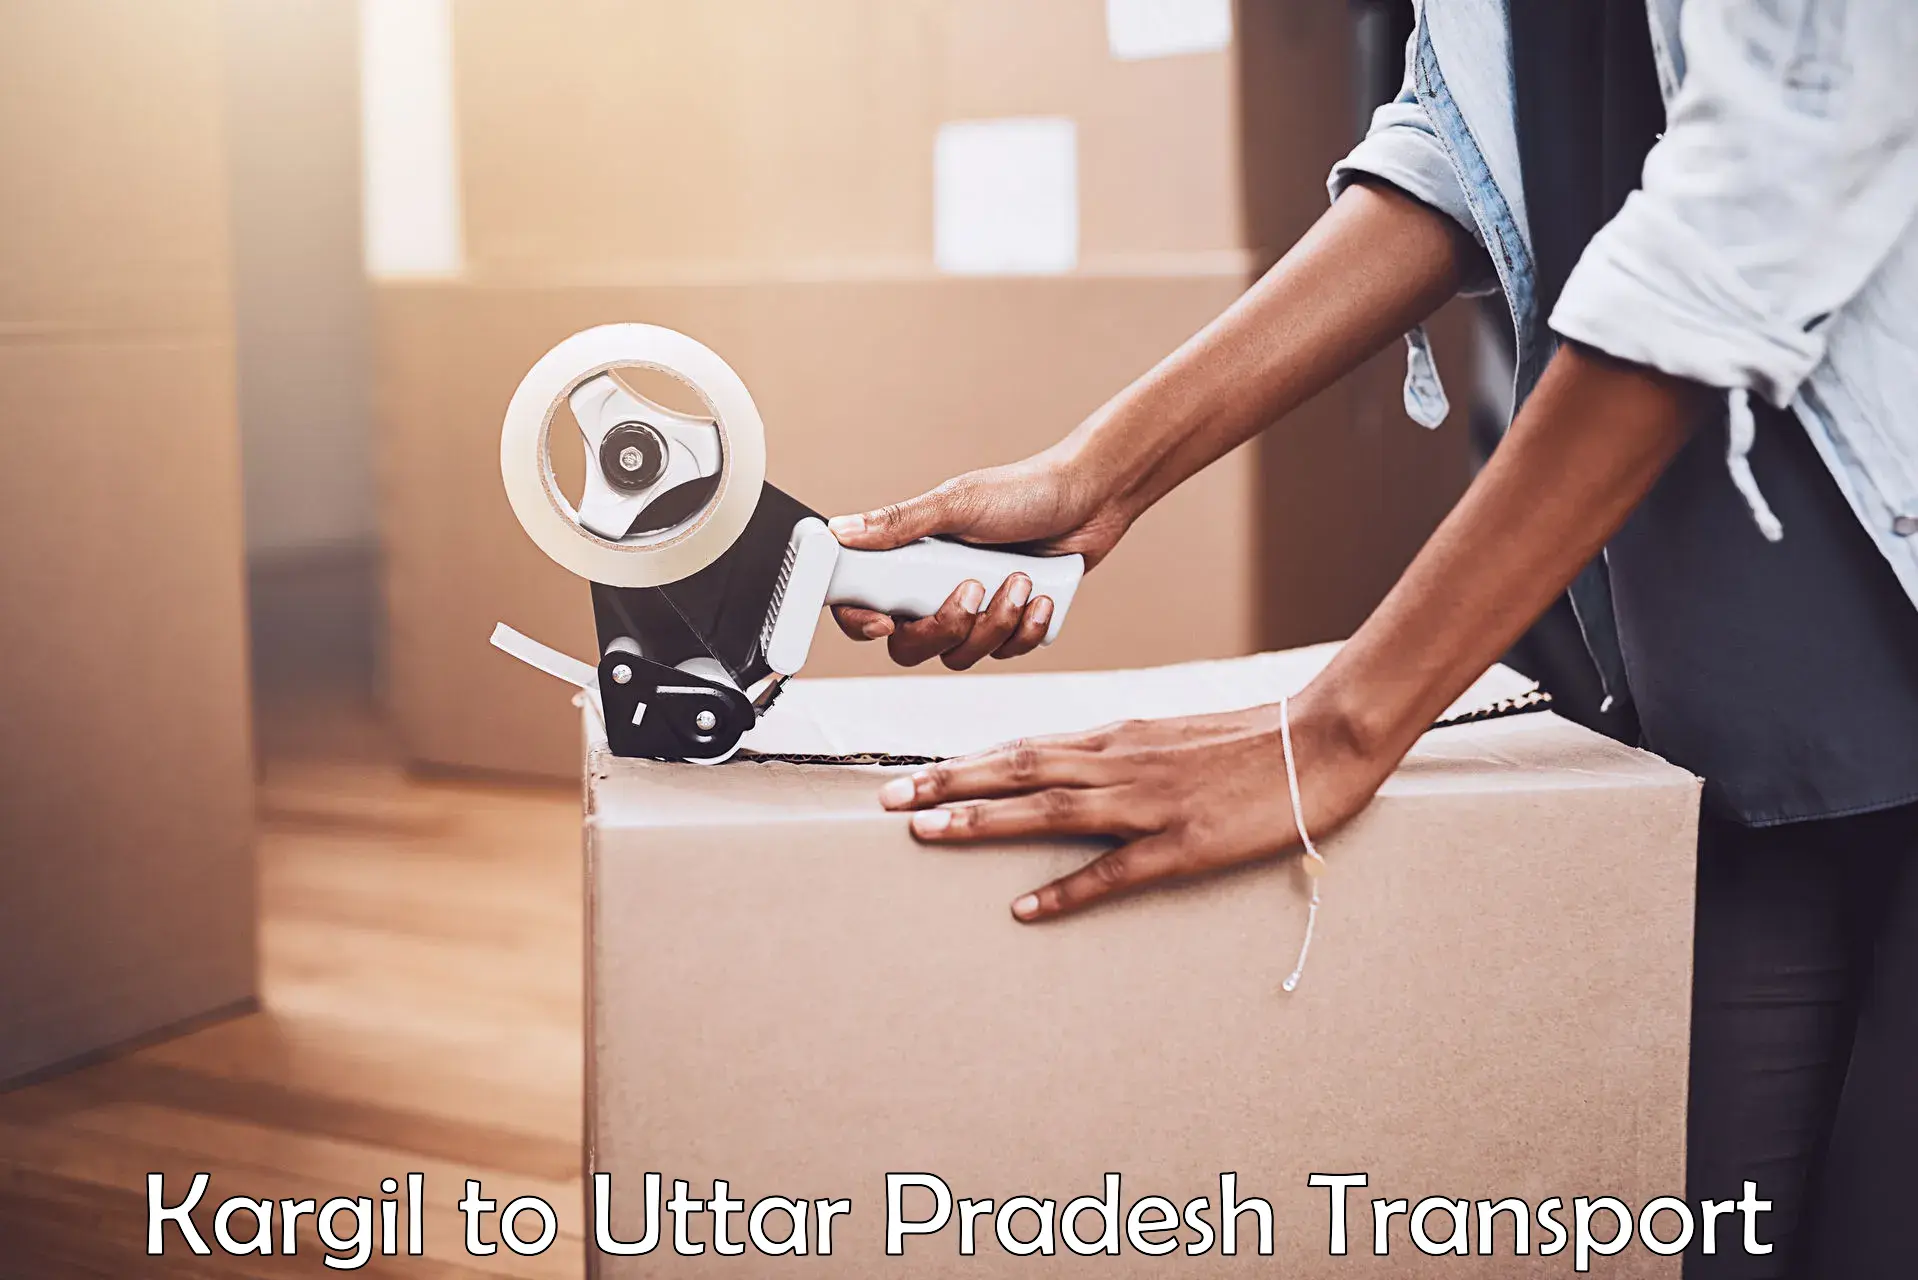 International cargo transportation services Kargil to Uttar Pradesh